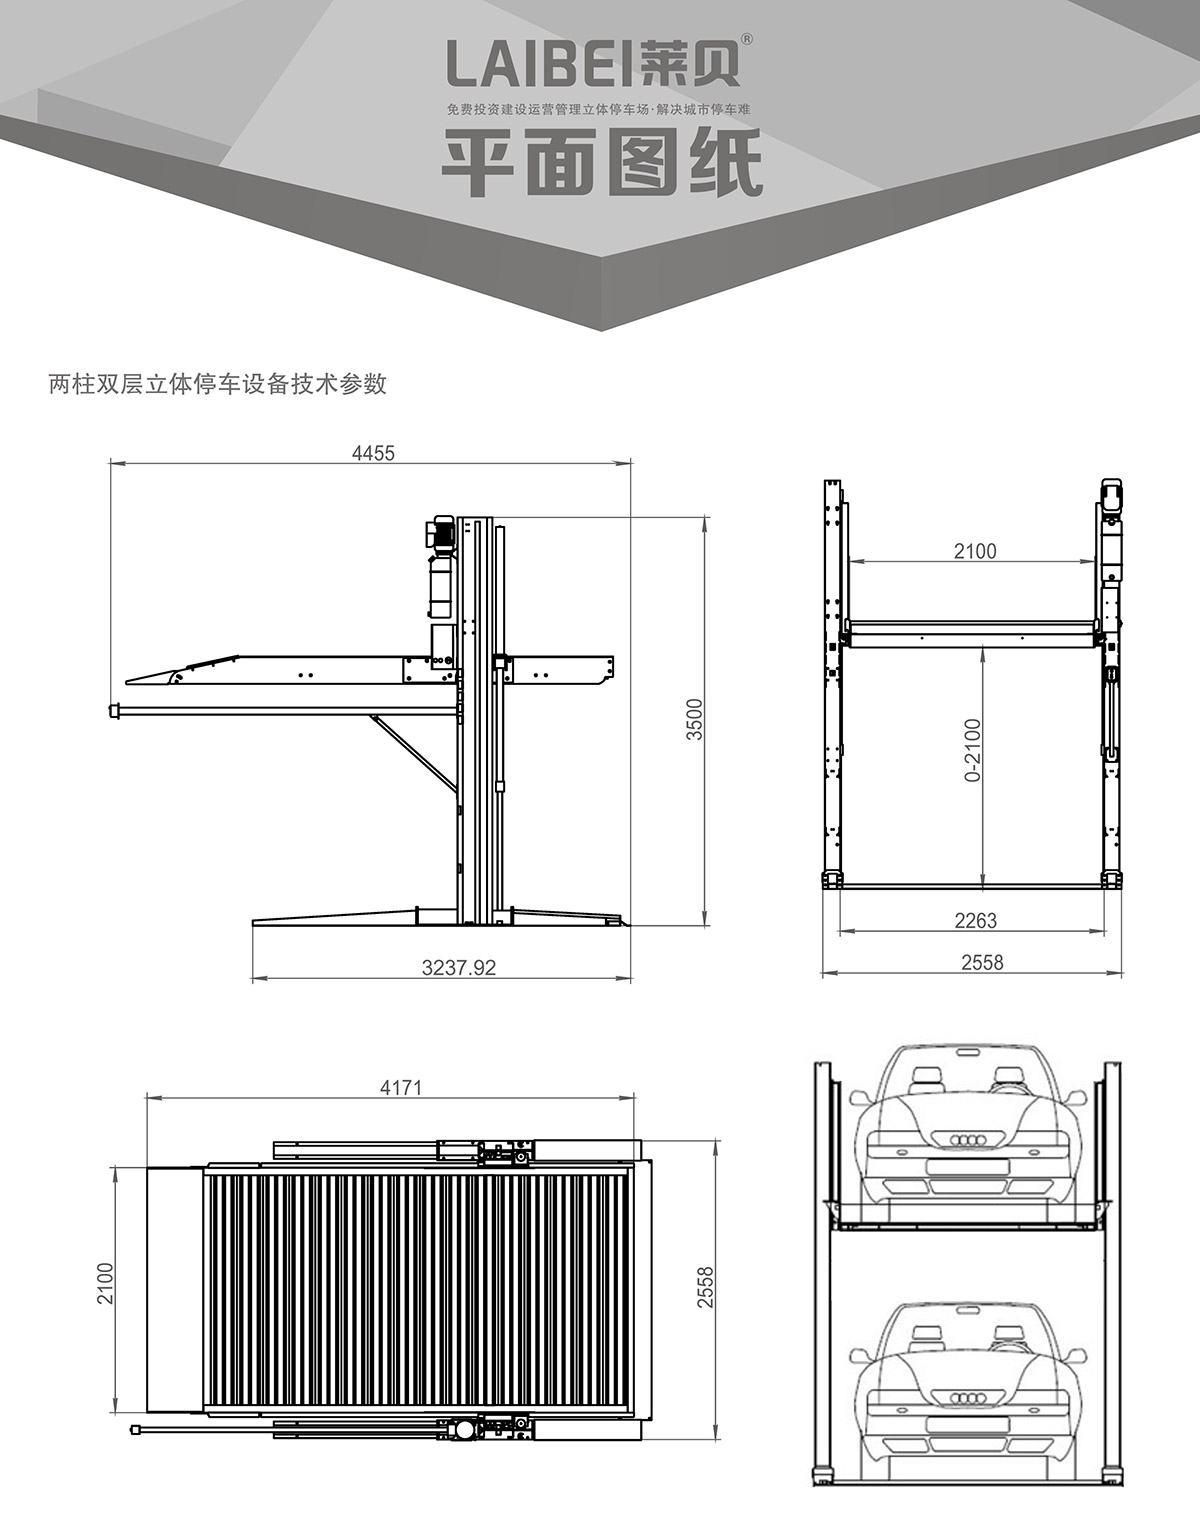 机械停车PJS两柱简易升降立体车库设备平面图纸.jpg